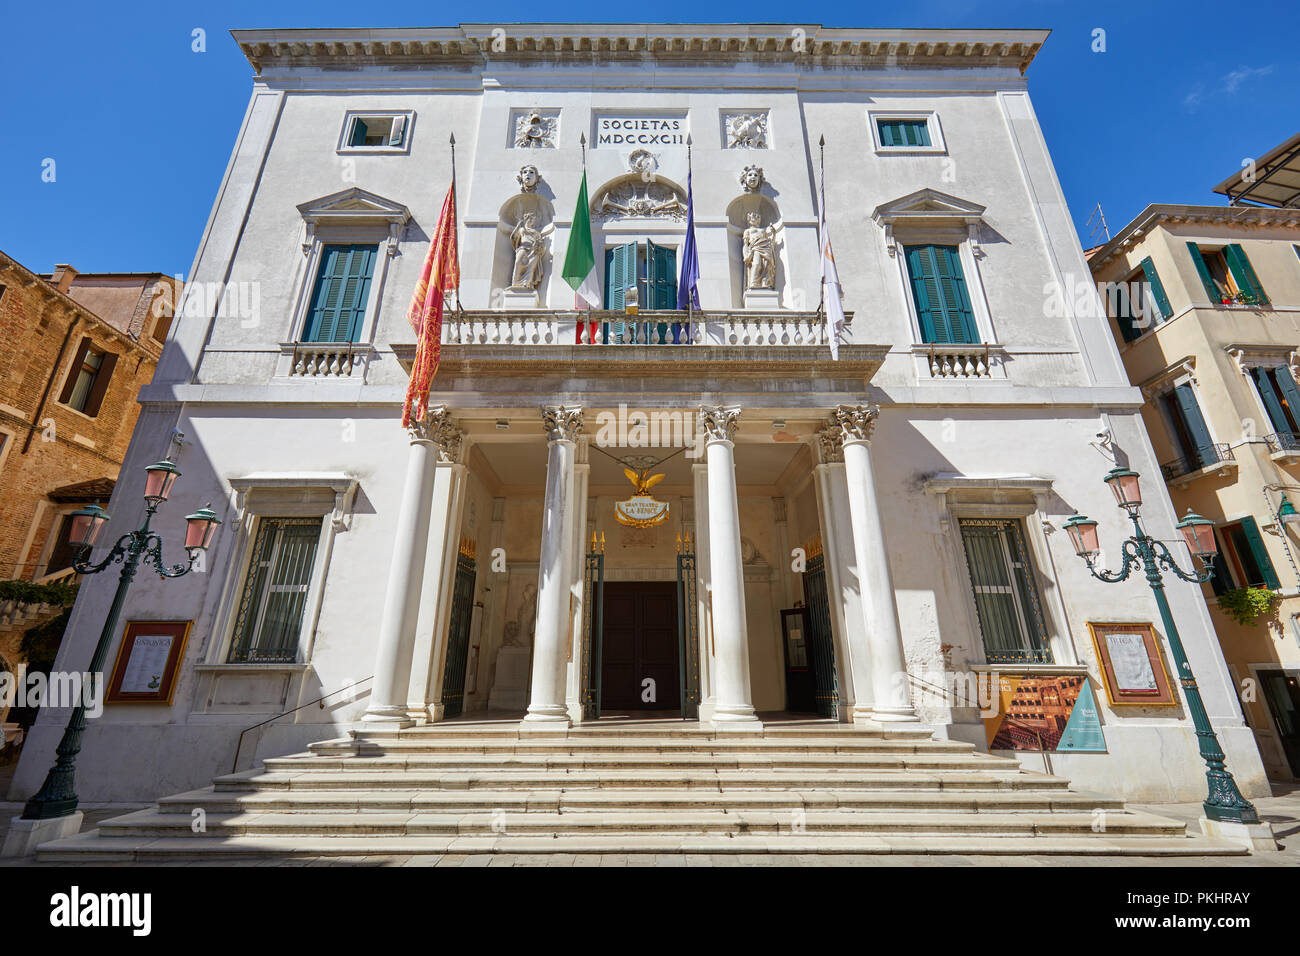 Venezia, Italia - 14 agosto 2017: Teatro La Fenice edificio con scalinata in una soleggiata giornata estiva, cielo blu chiaro a Venezia, Italia Foto Stock